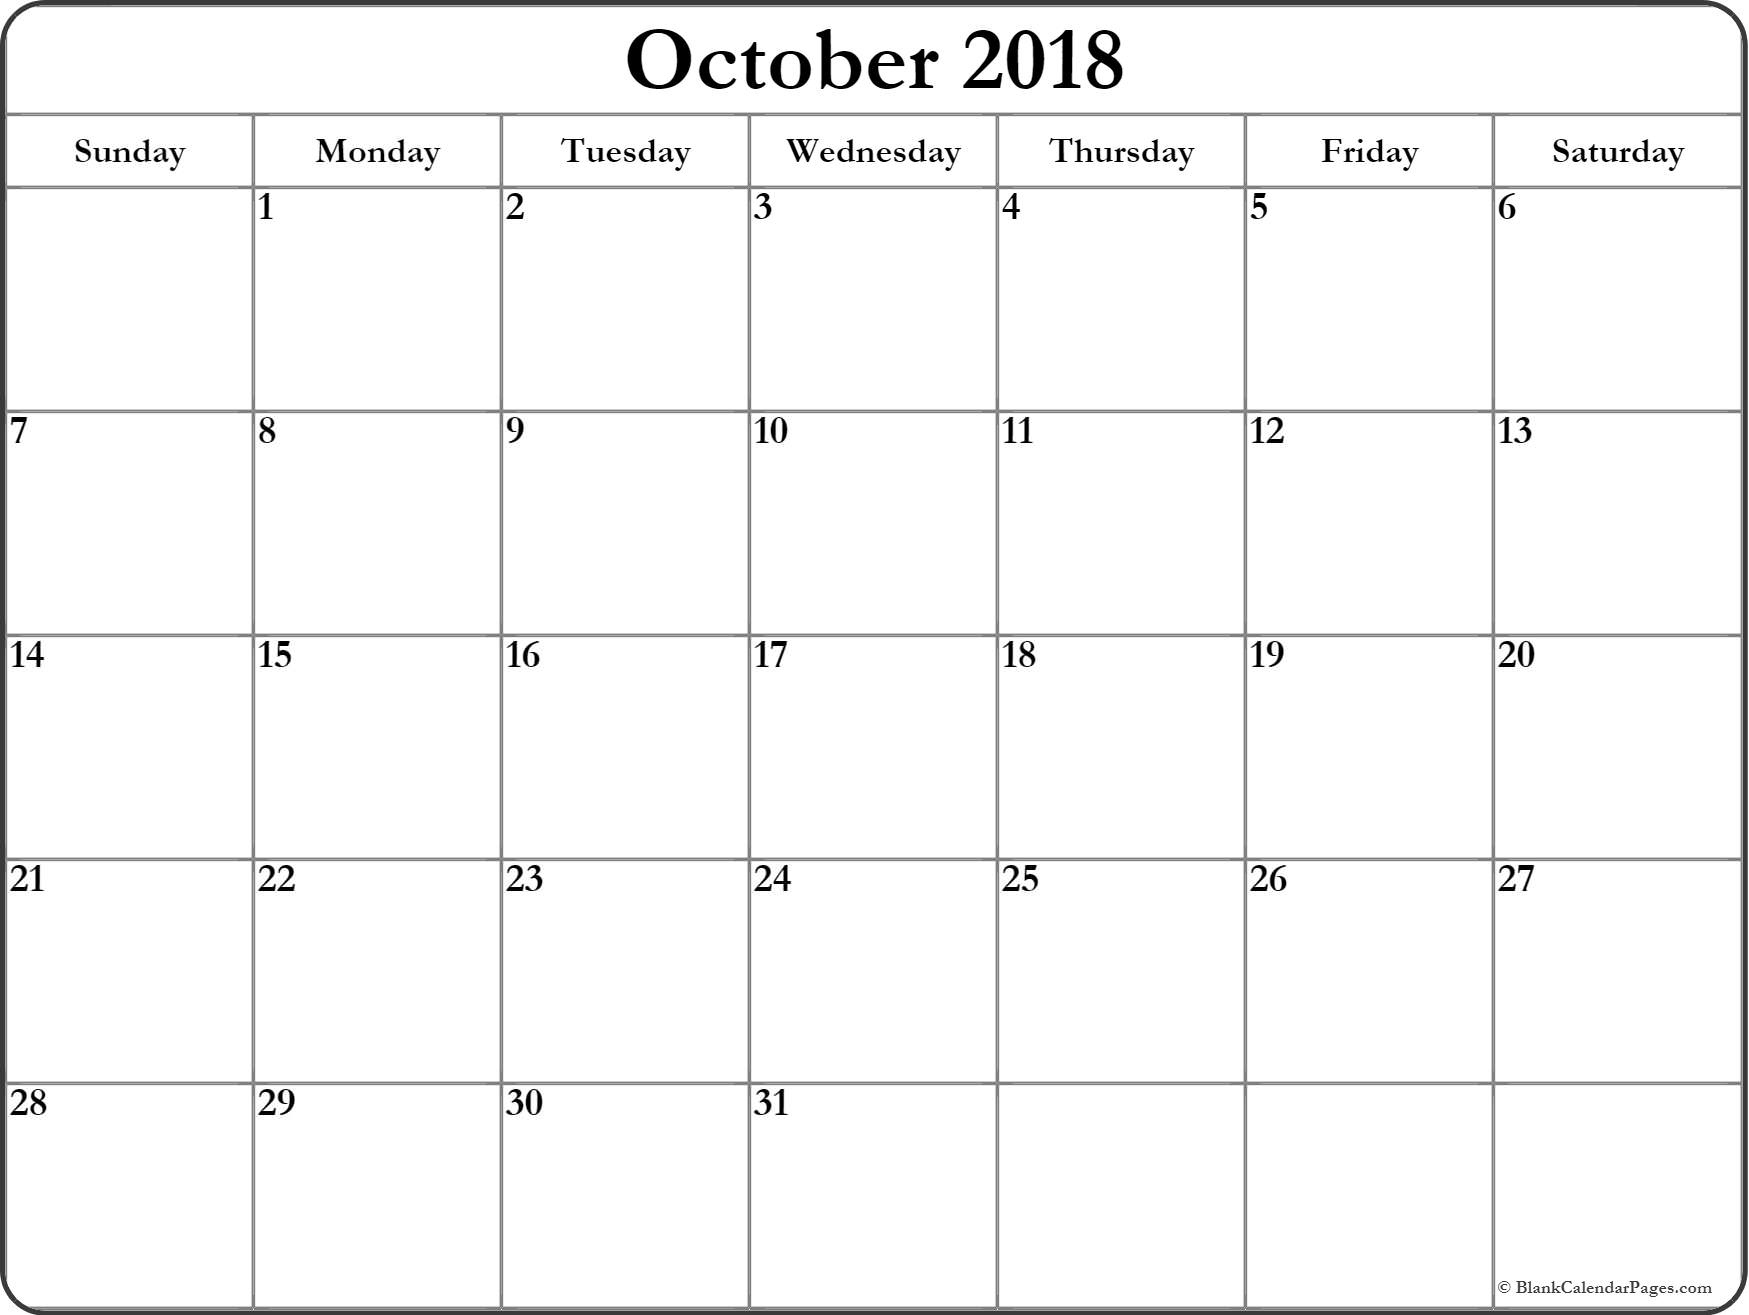 October 2018 Blank Calendar Templates. Incredible A Blank Calendar Page